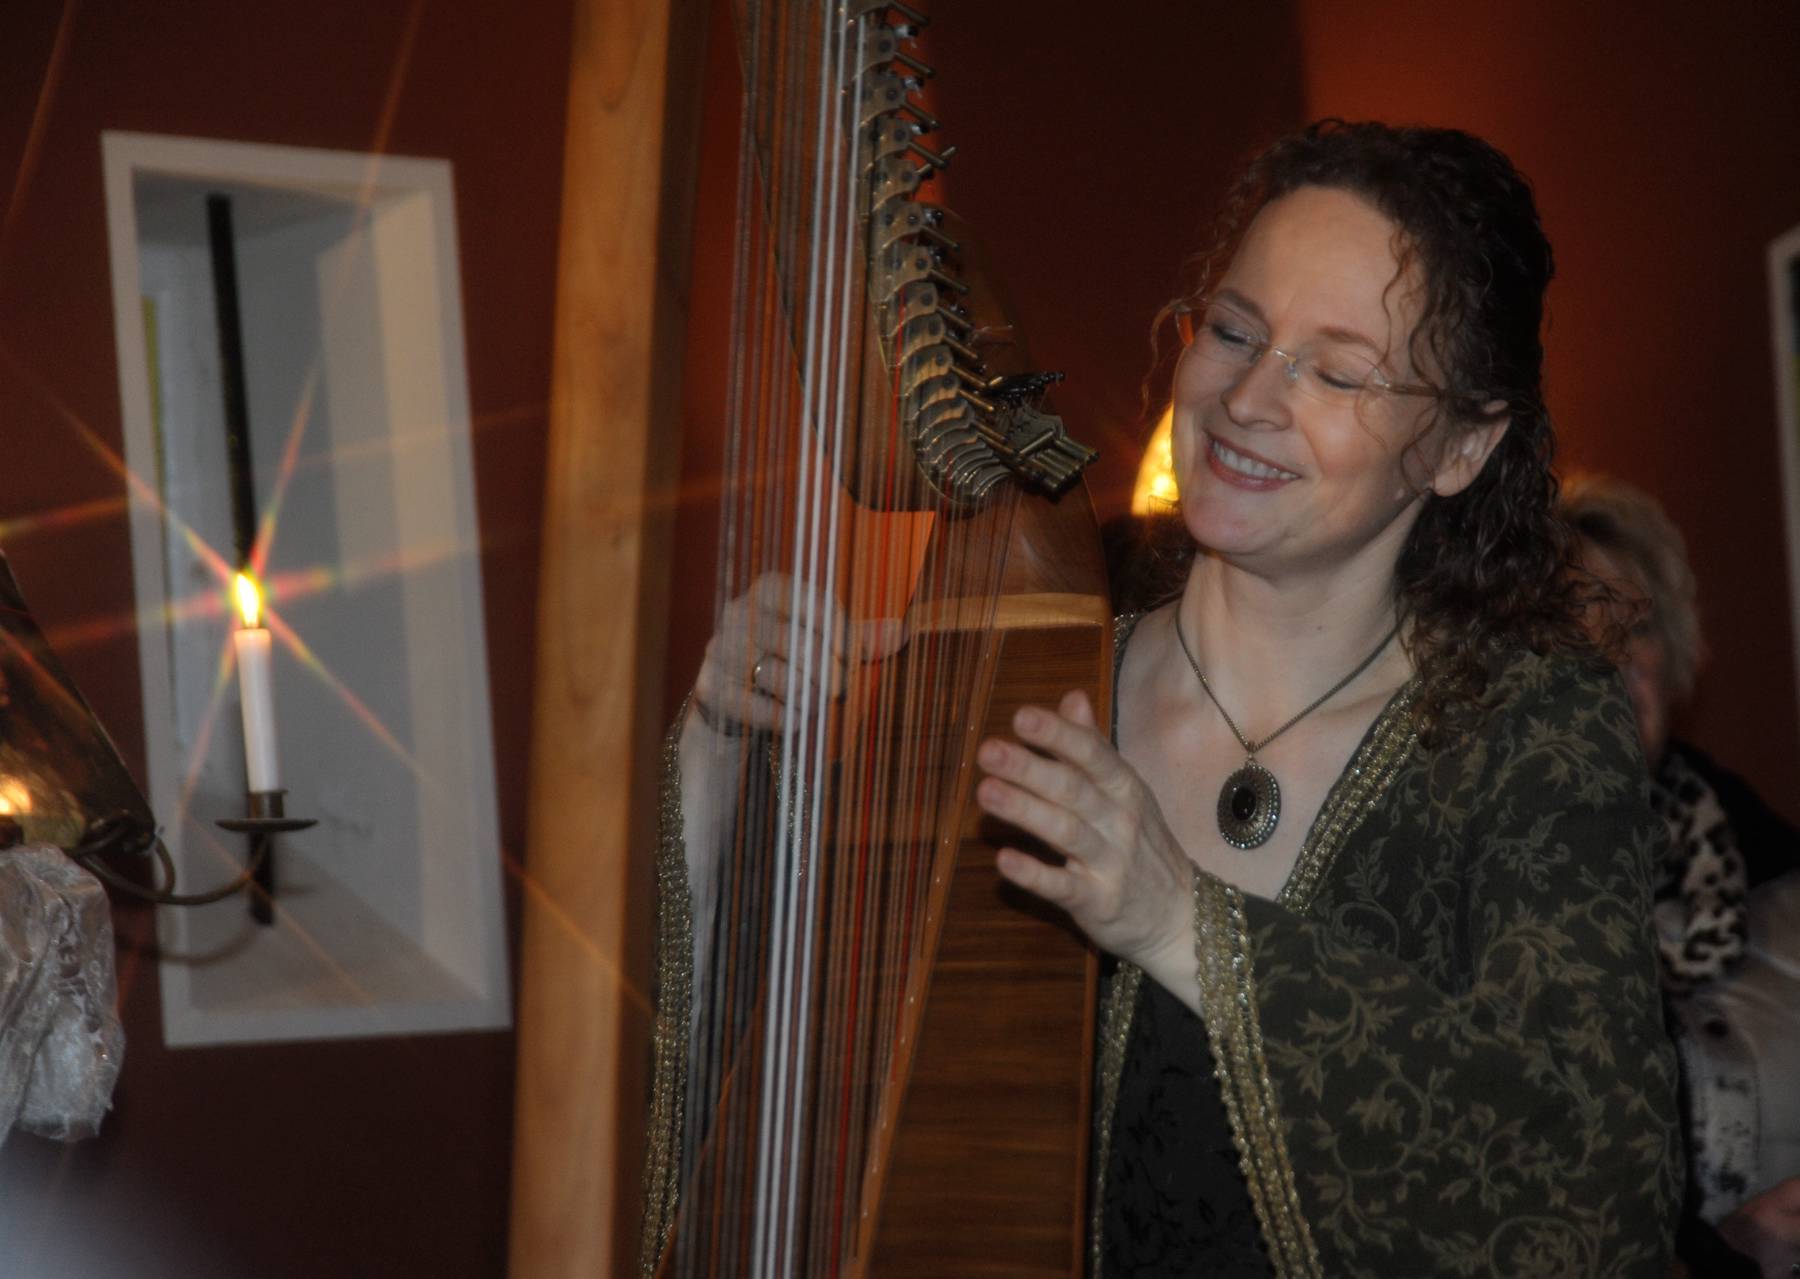 Märchenerzähler  Märchenerzähler   Harfe Instrument Musikinstrumet  Klang            Brigtitte Hagen erzählte Märchen, während Heike Tönjes die Vorträge mit ihrem einfühlsamen Harfenspiel begleitete. Märchen